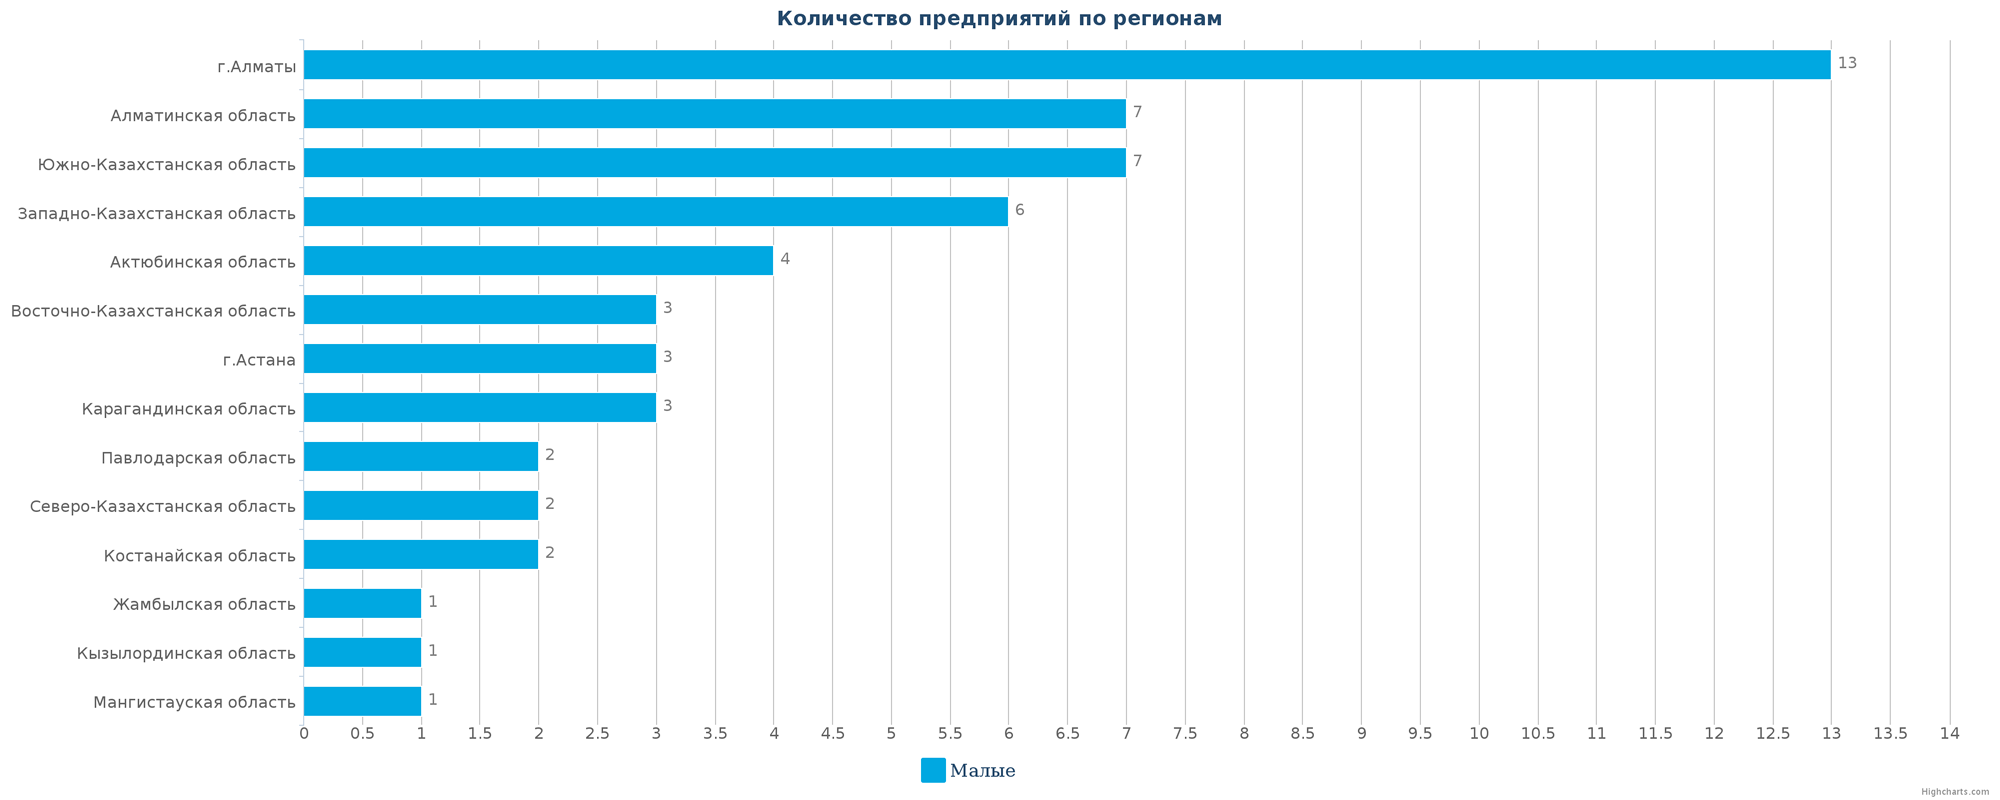 Количество новых промышленных предприятий по регионам Казахстана